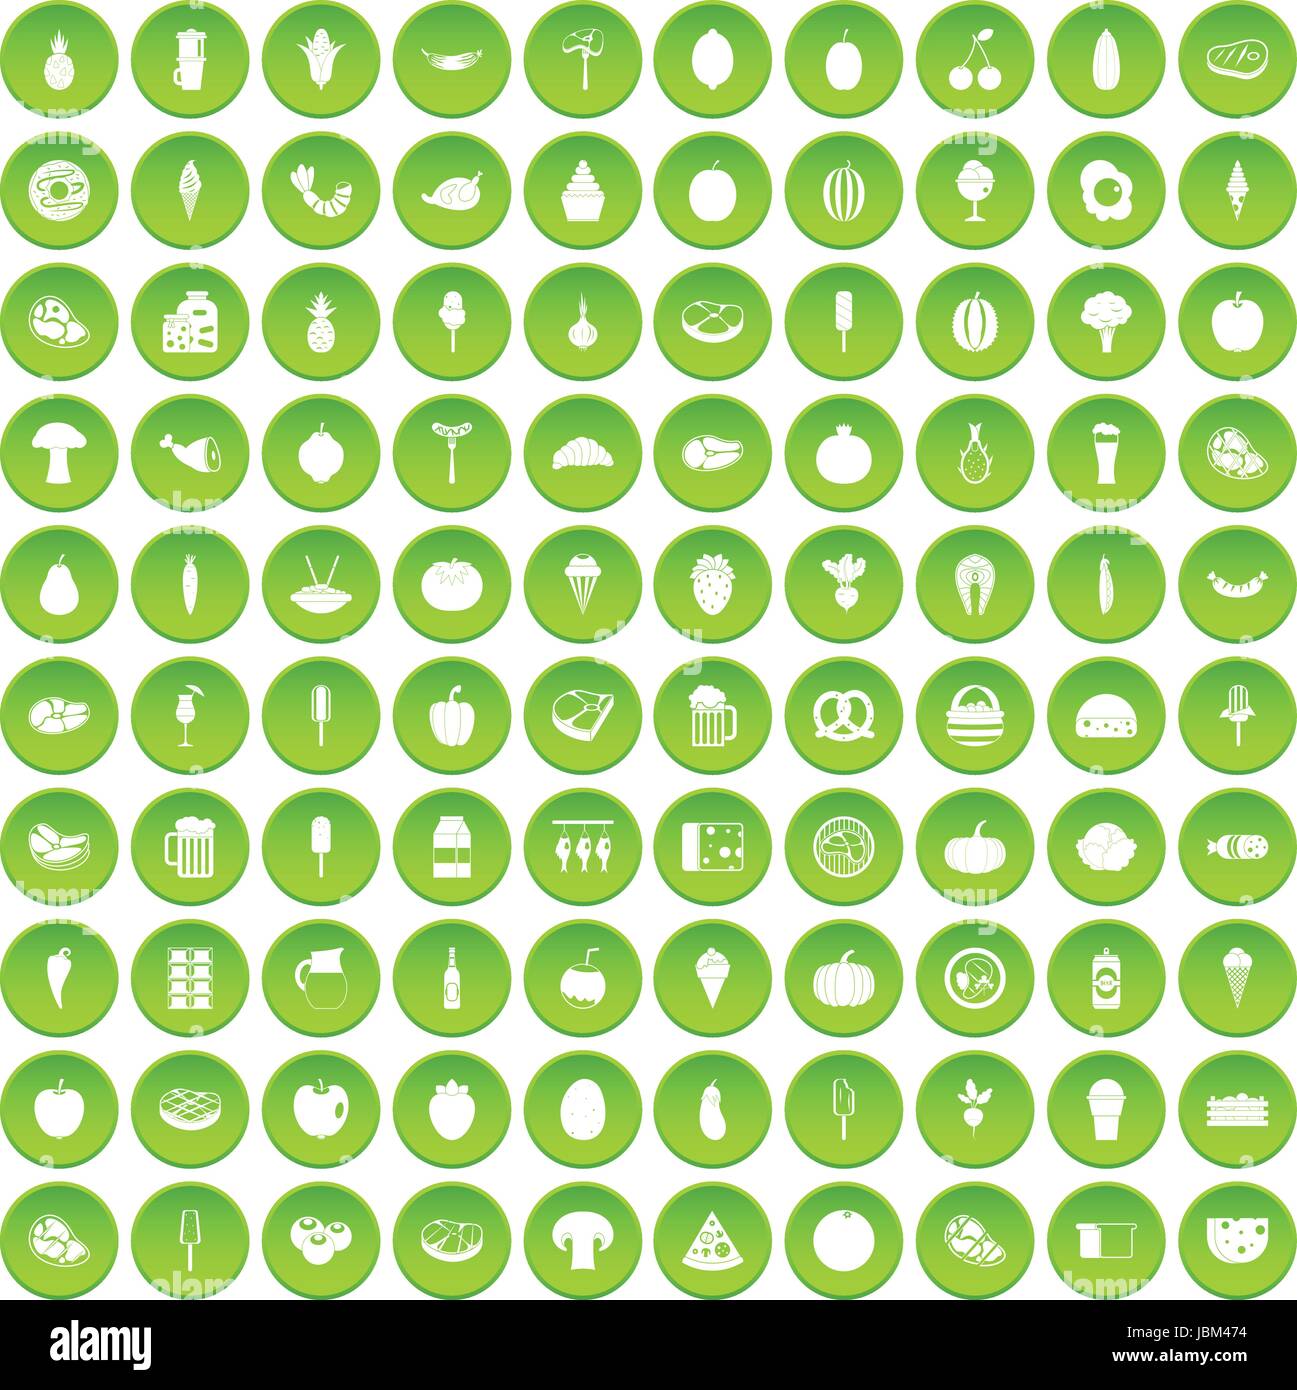 100 food icons set green circle Stock Vector